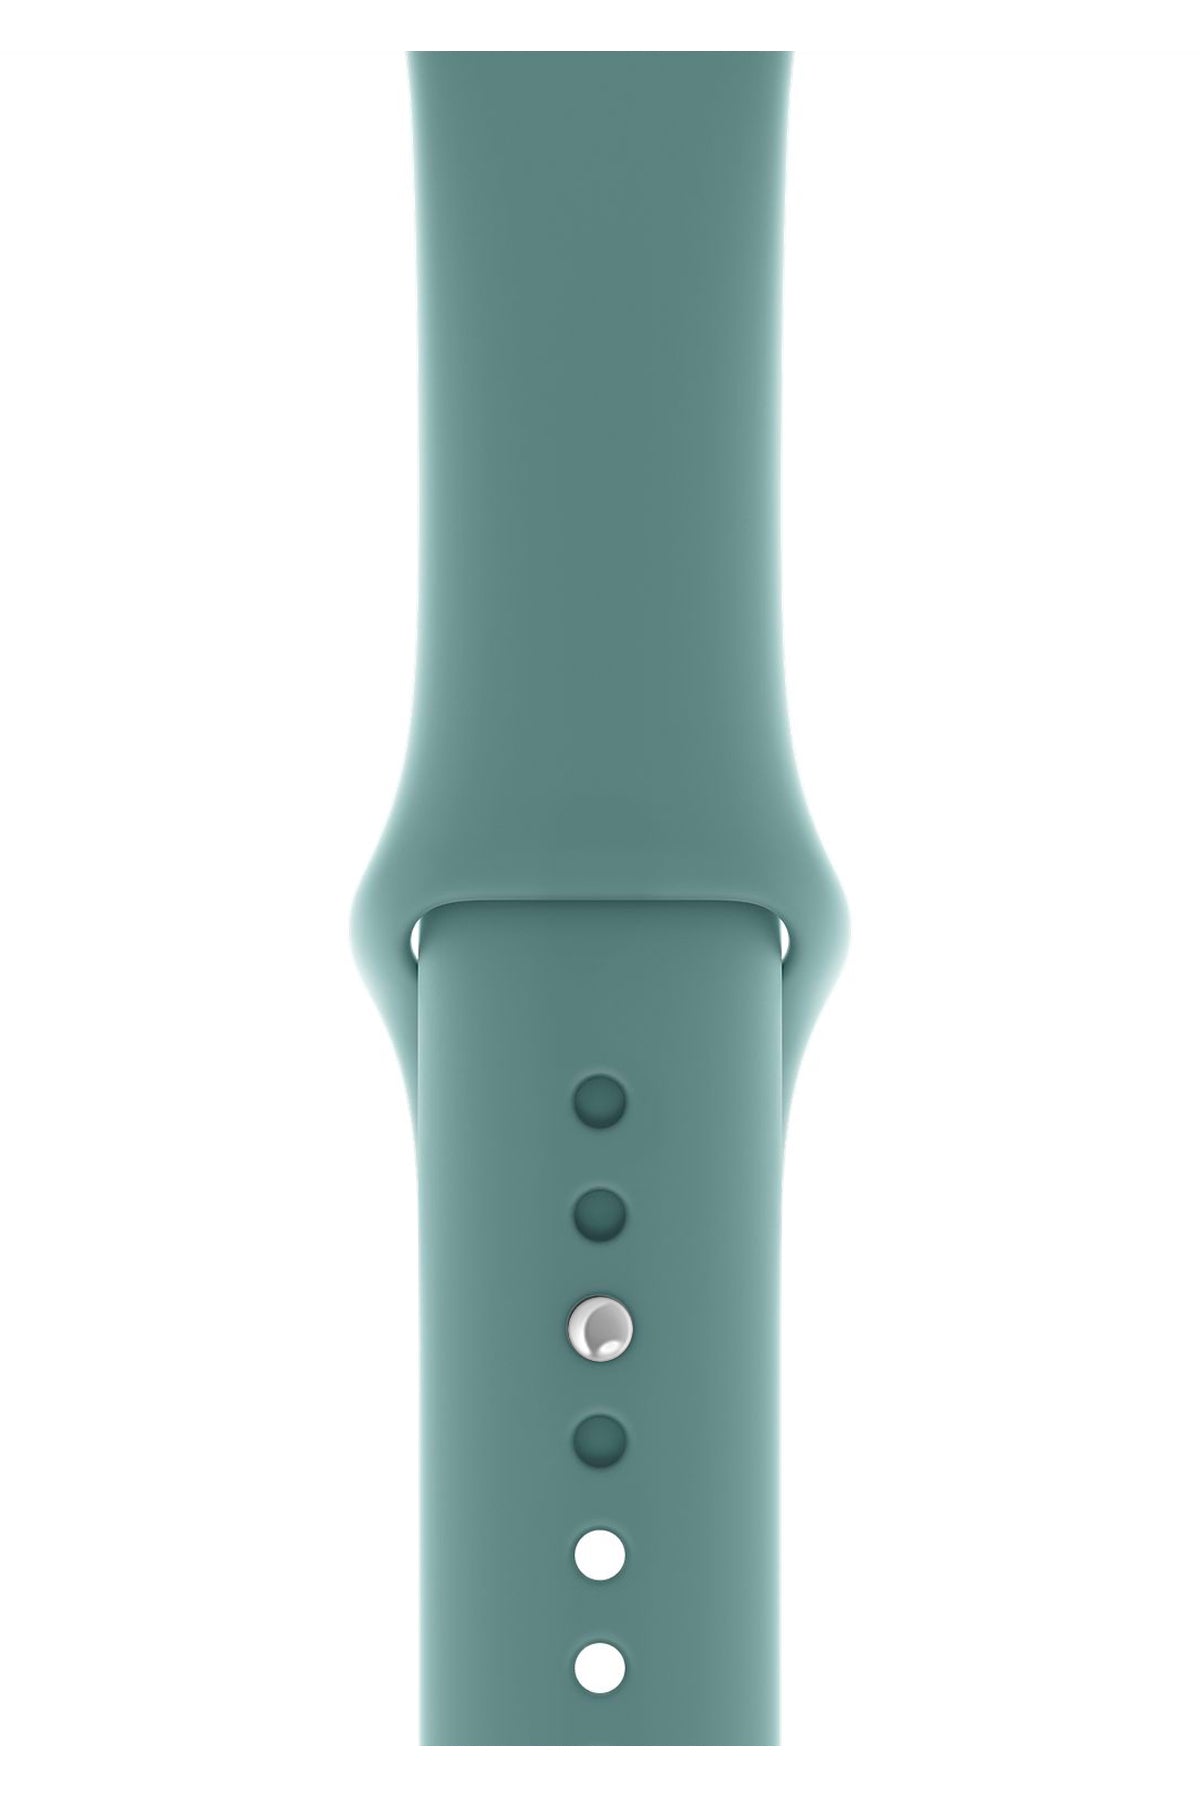 Apple Watch Uyumlu Silikon Spor Kordon Kaktüs Yeşil